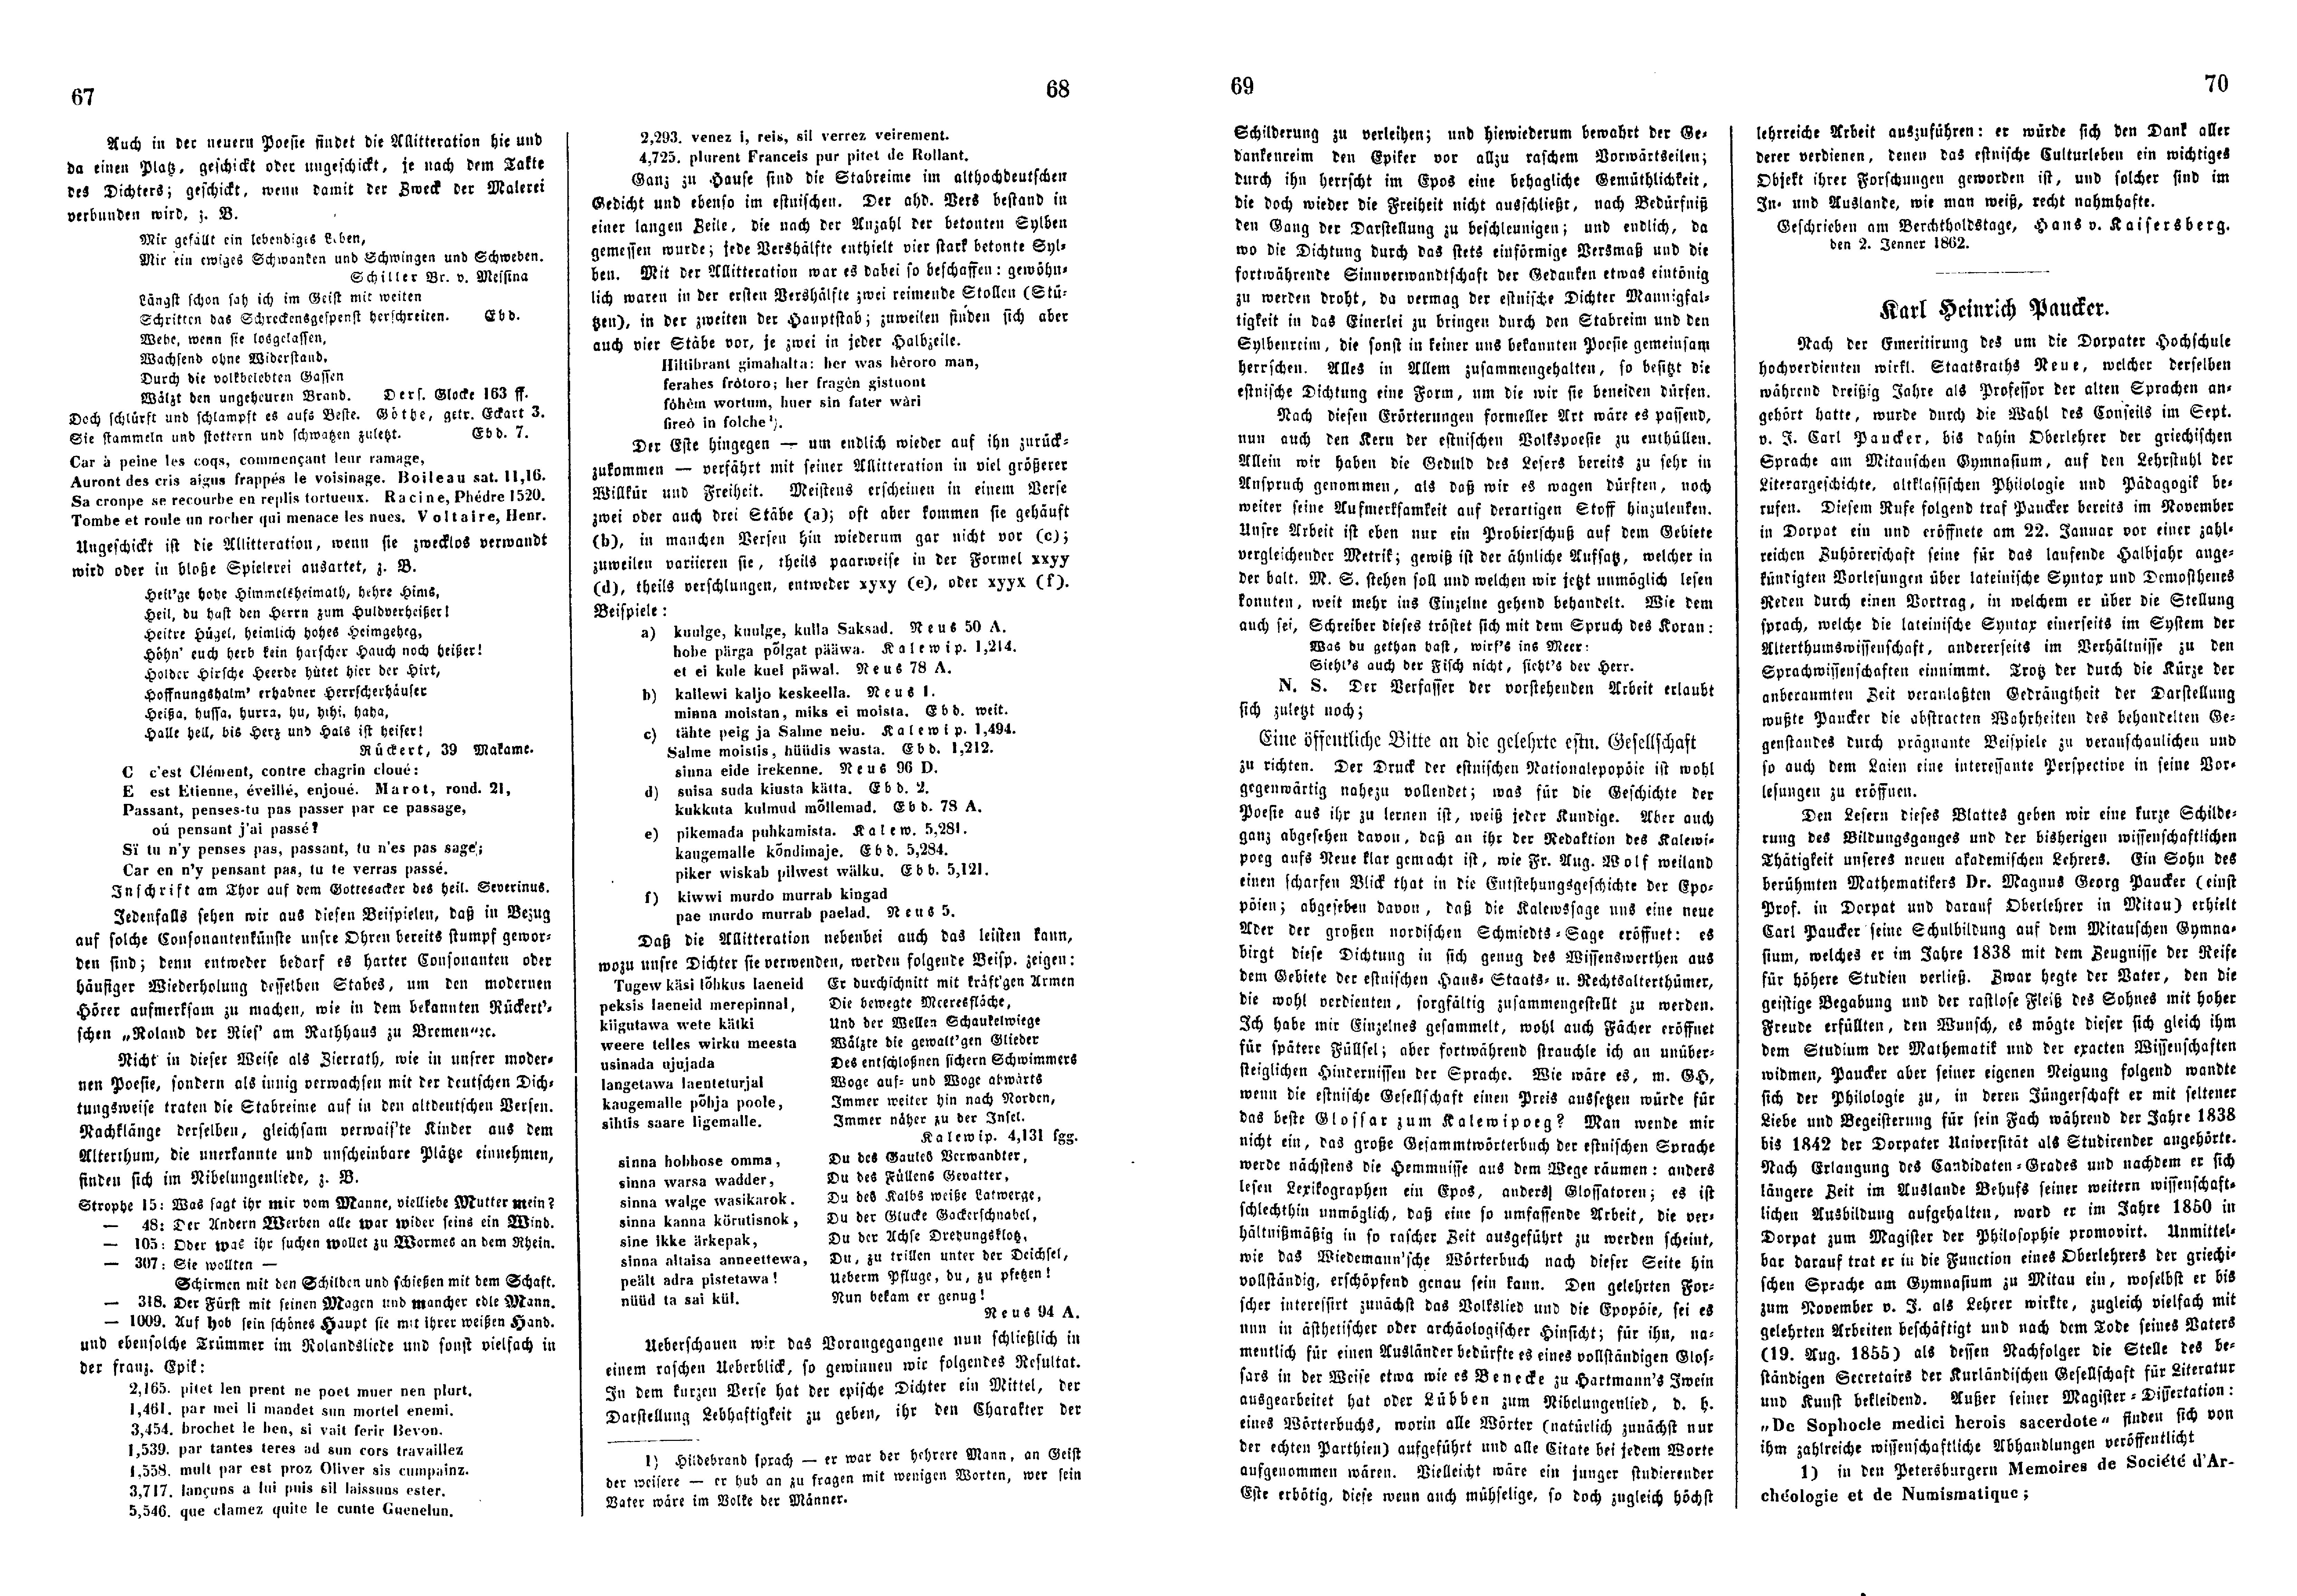 Das Inland [27] (1862) | 21. (67-70) Основной текст